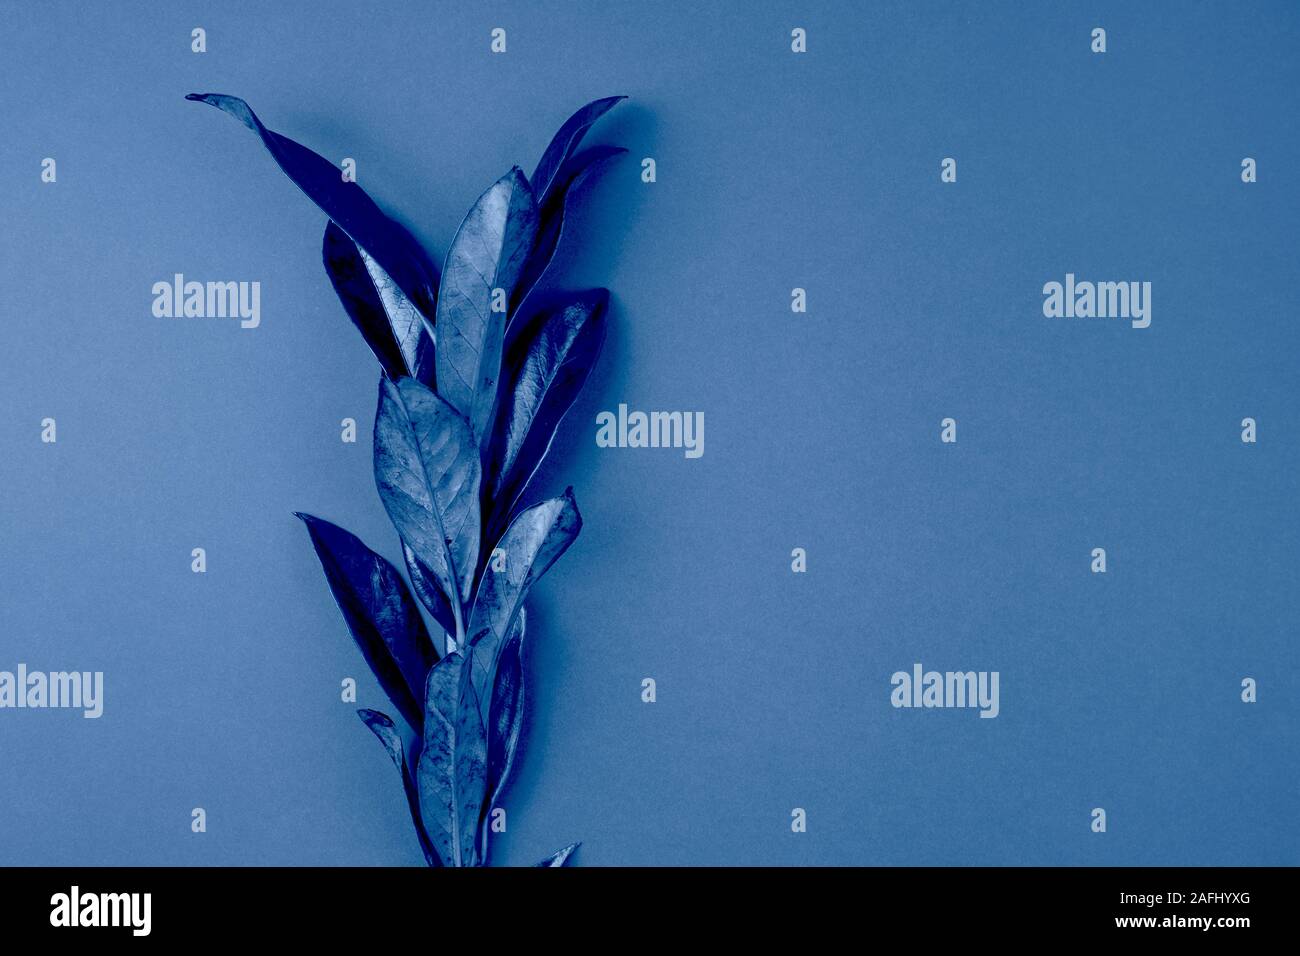 Succursale de laurel bay feuilles sur fond bleu Banque D'Images